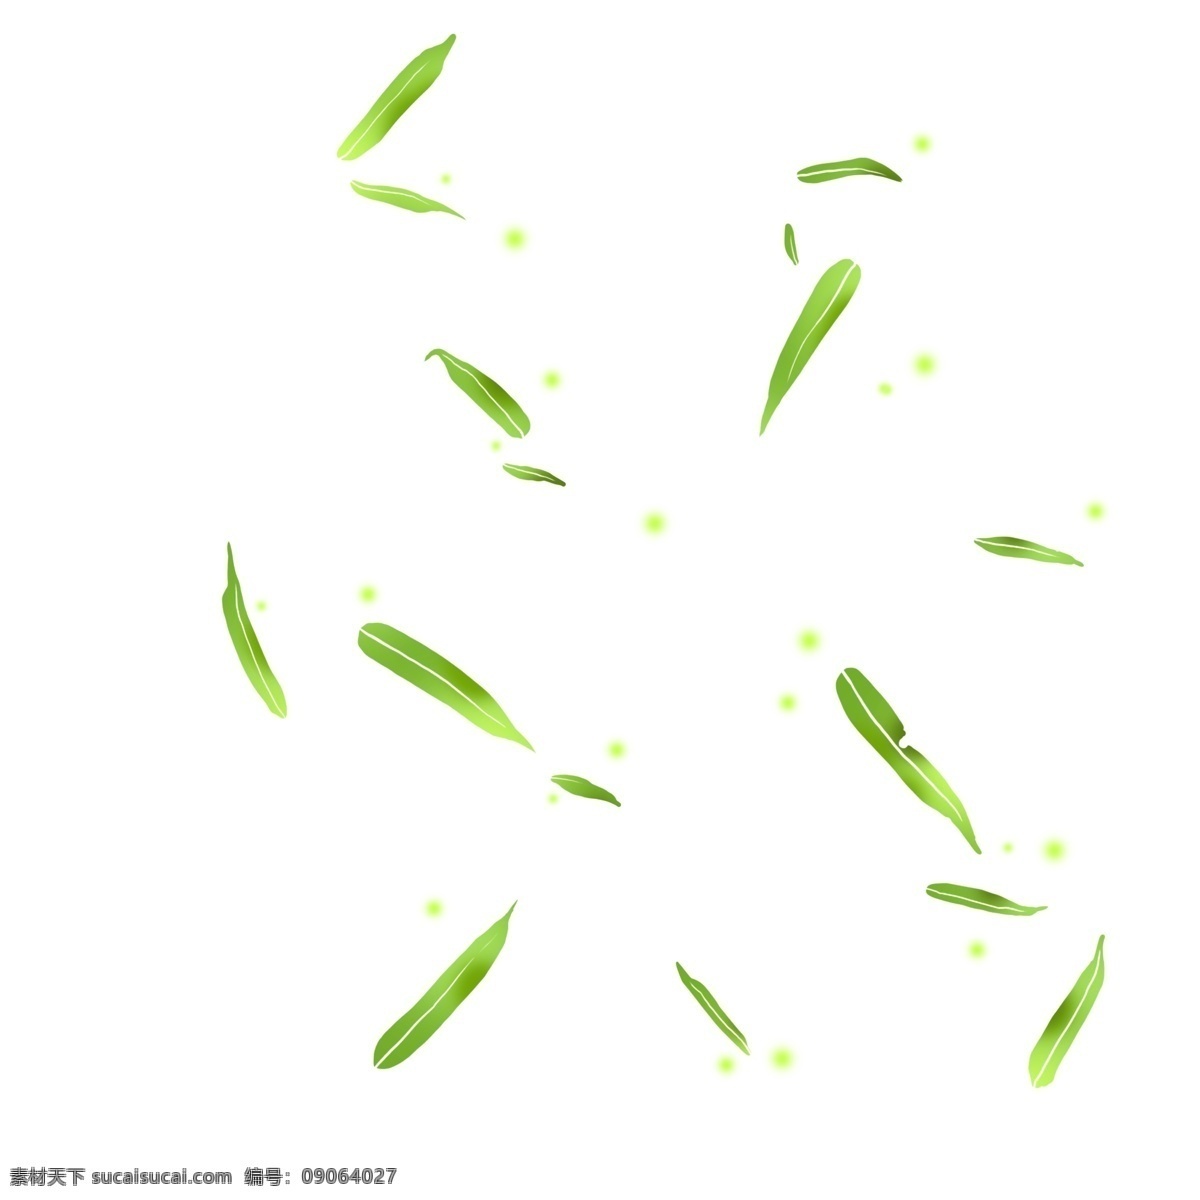 竹叶 漂浮 绿色 中国风 手绘卡通 草本植物 植物 叶子 翠绿 水墨竹林 竹叶漂浮装饰 雅致